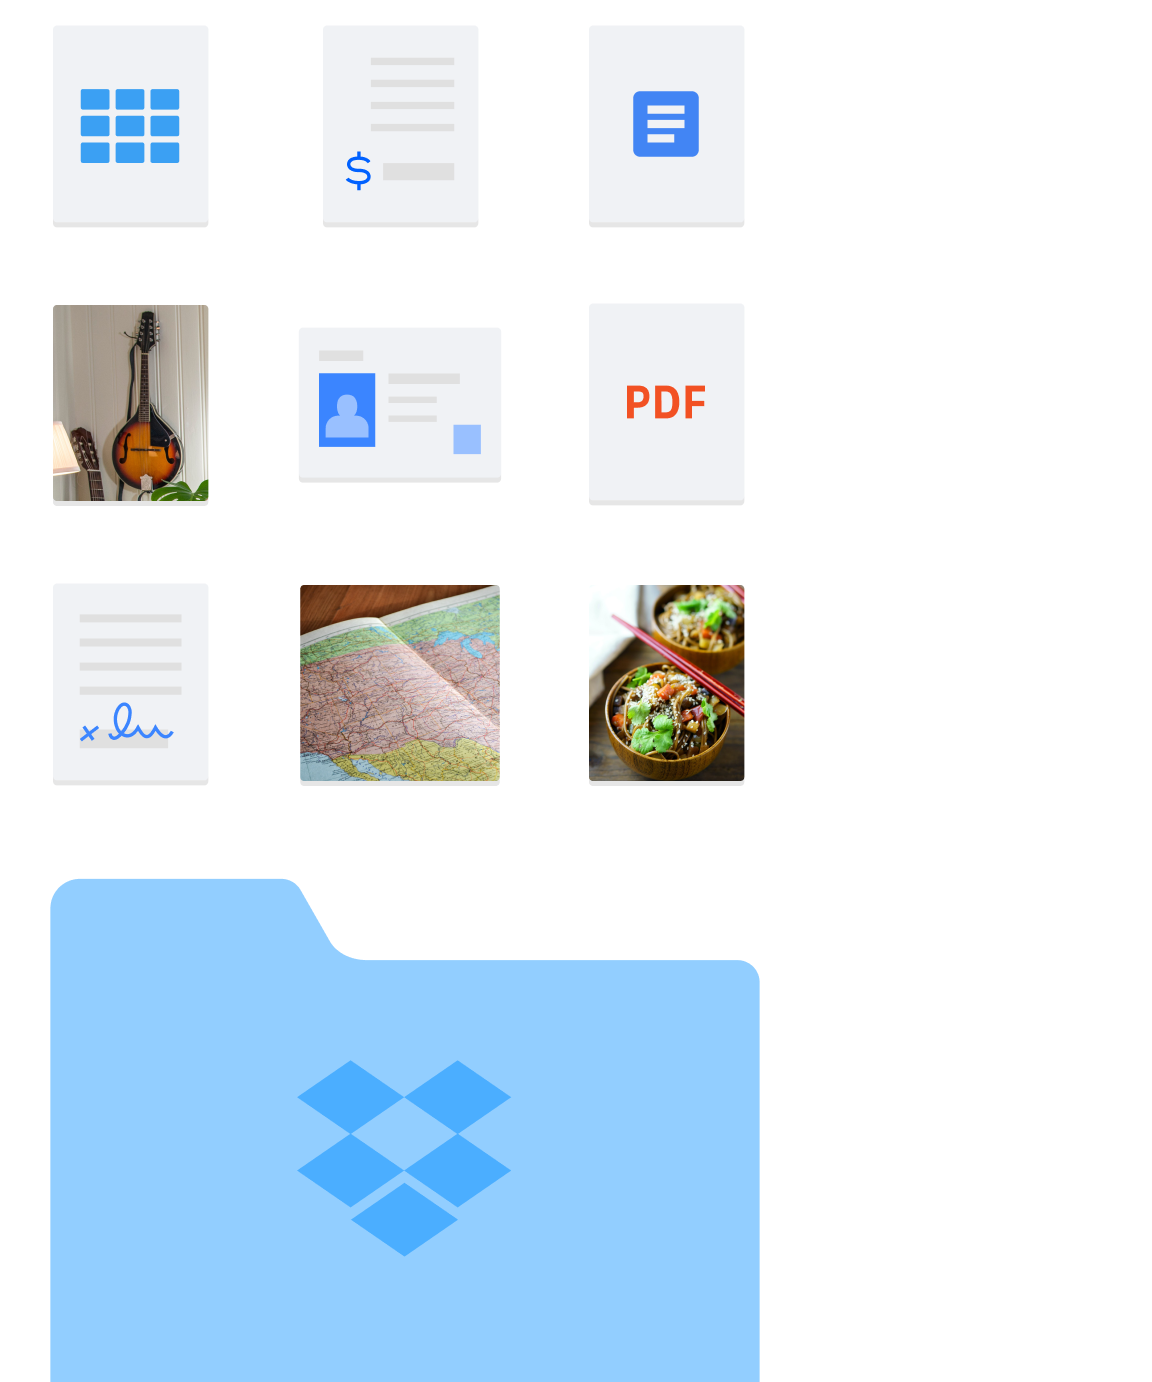 Imagen de varios tipos de carpetas y archivos, como imágenes y documentos, guardados en Dropbox.